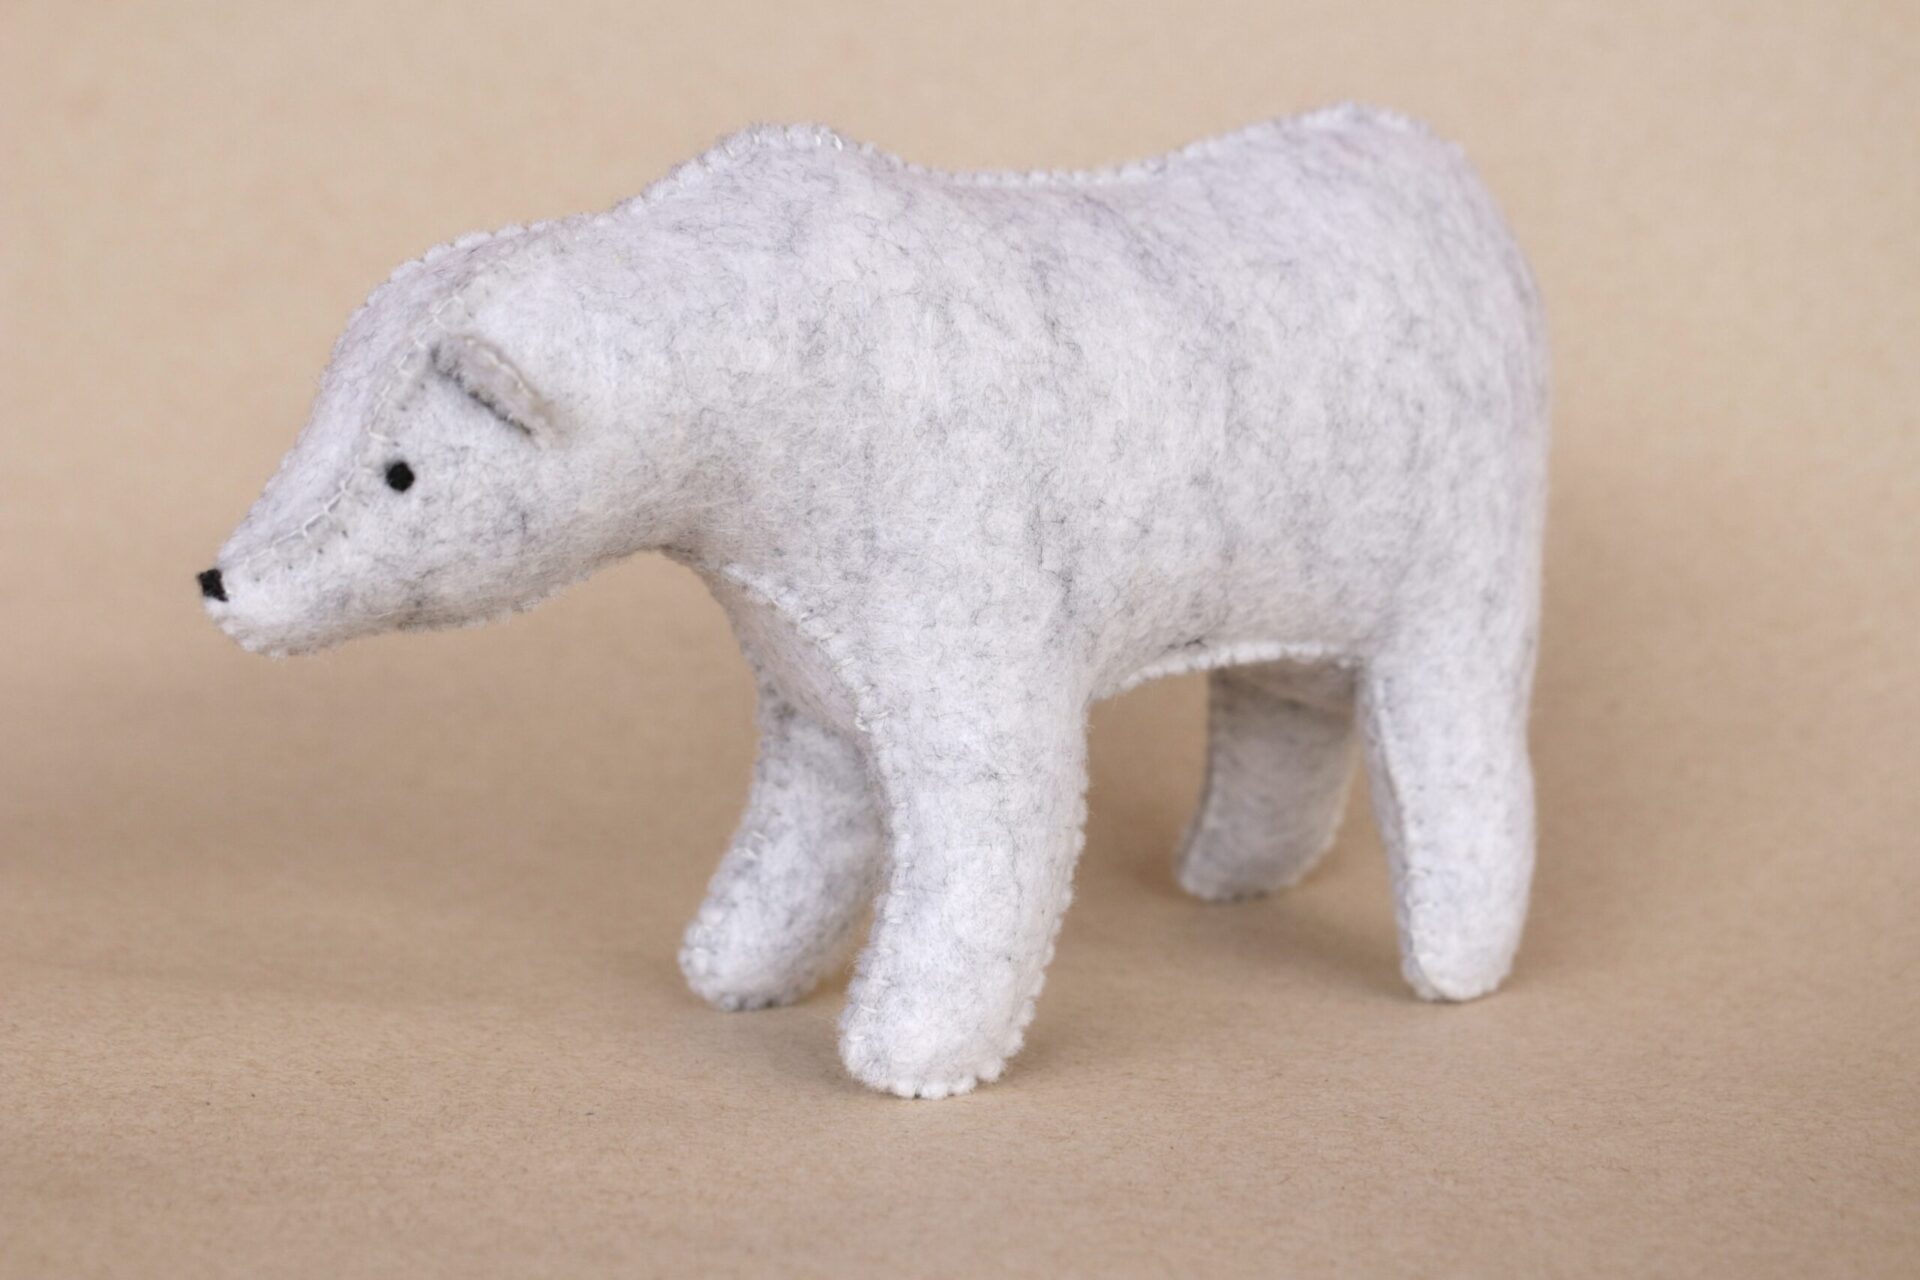 Jouet ours polaire en feutrine de laine